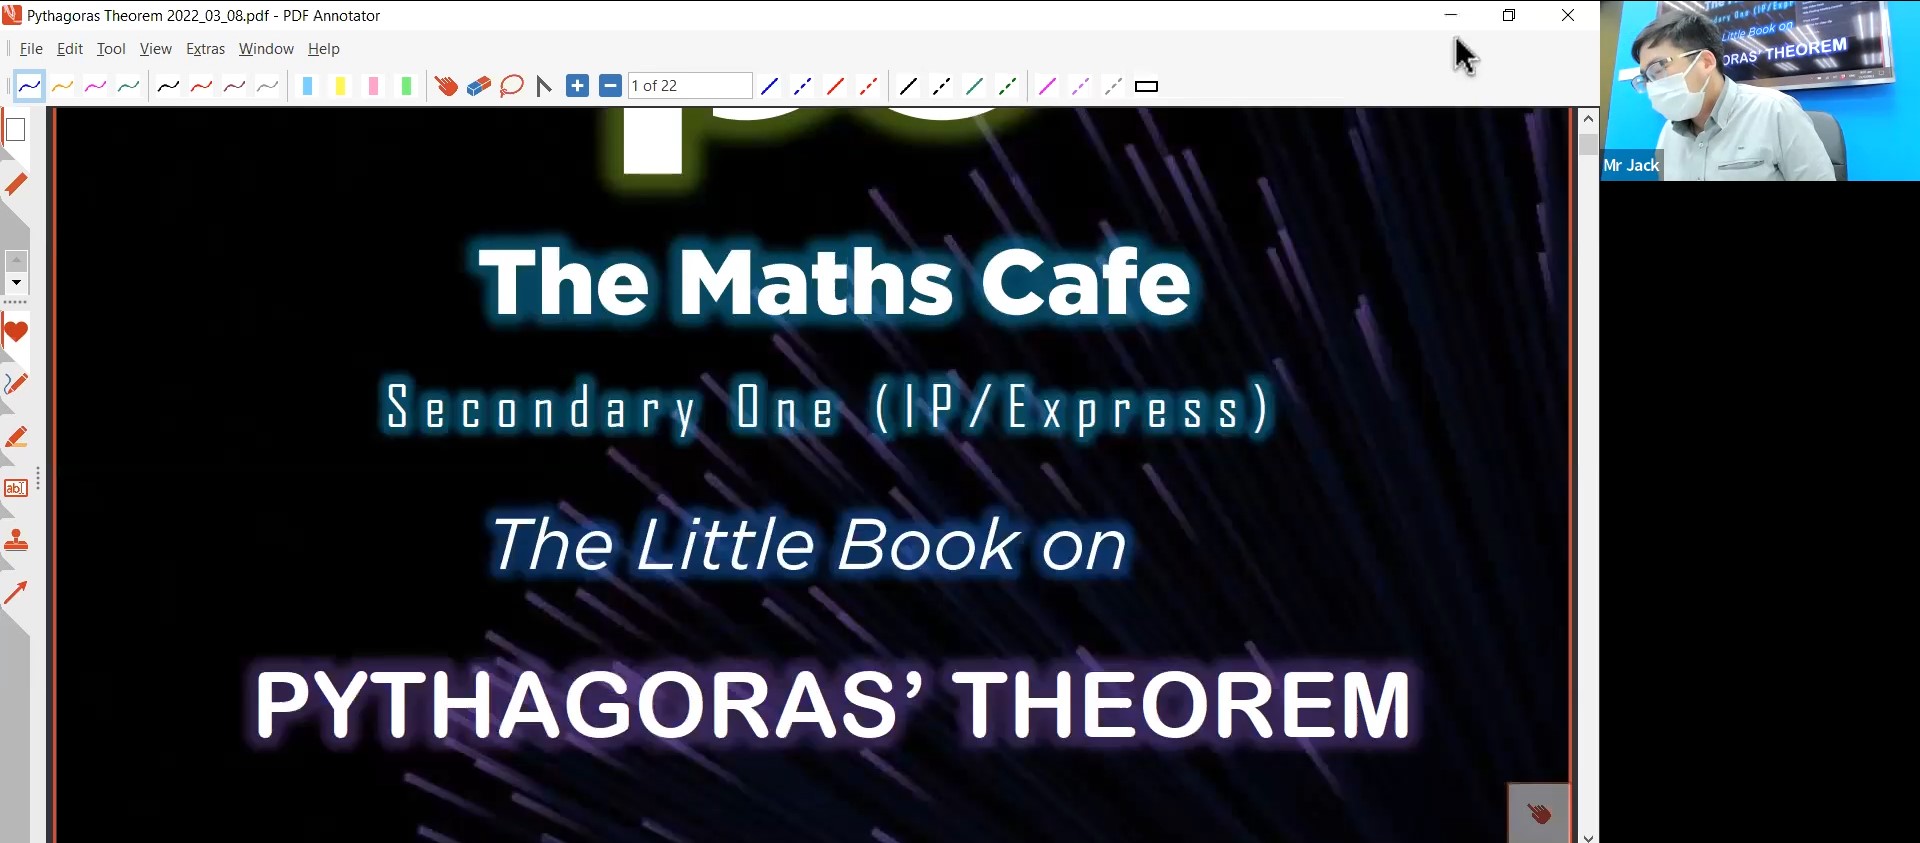 23. Pythagoras Theorem [2022] - MJ